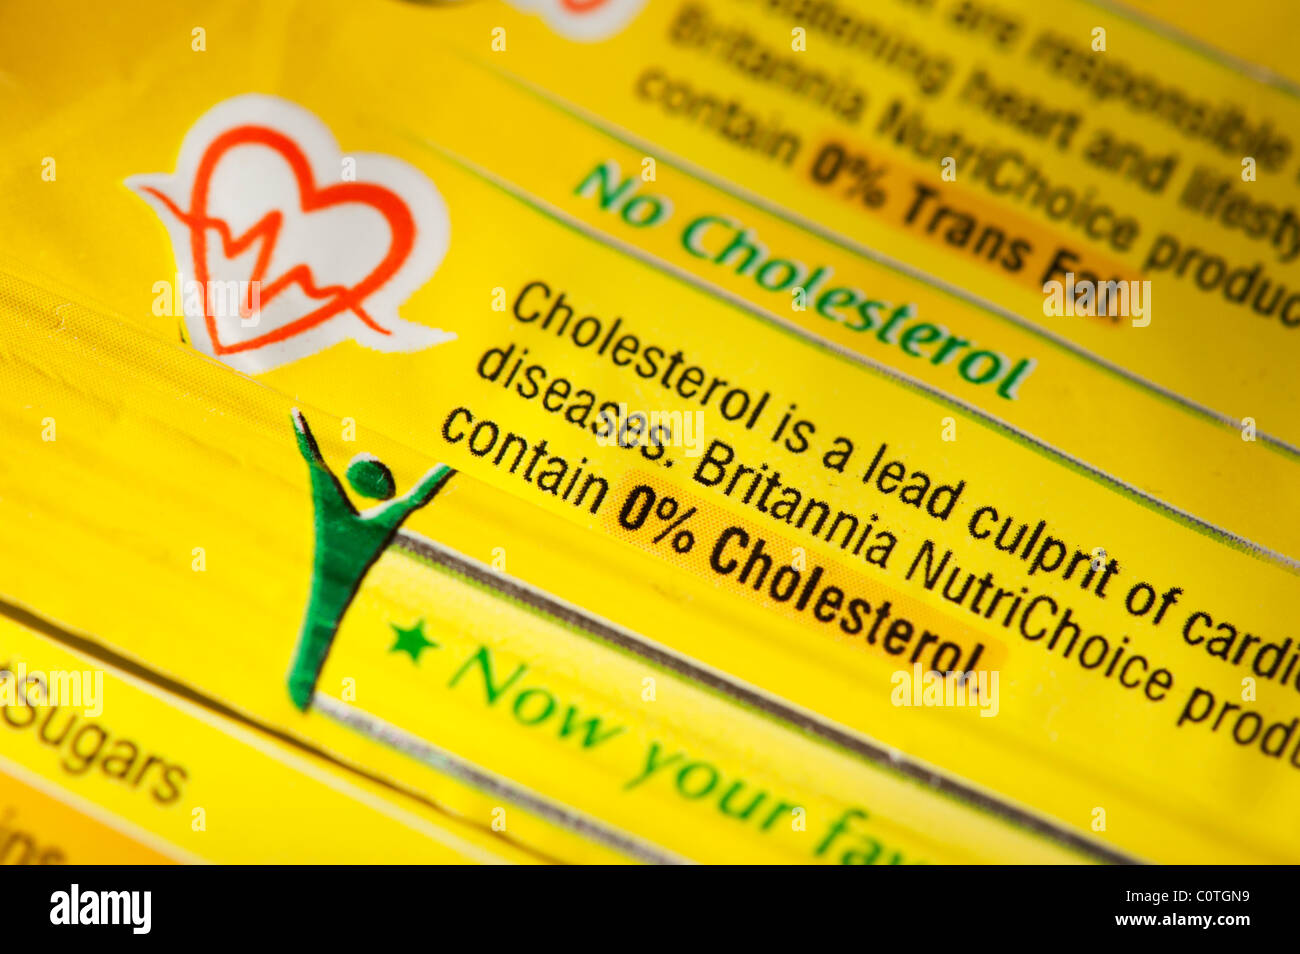 Sans cholestérol et sans gras trans conseils alimentaires sur un paquet de nourriture indienne. L'Inde Banque D'Images